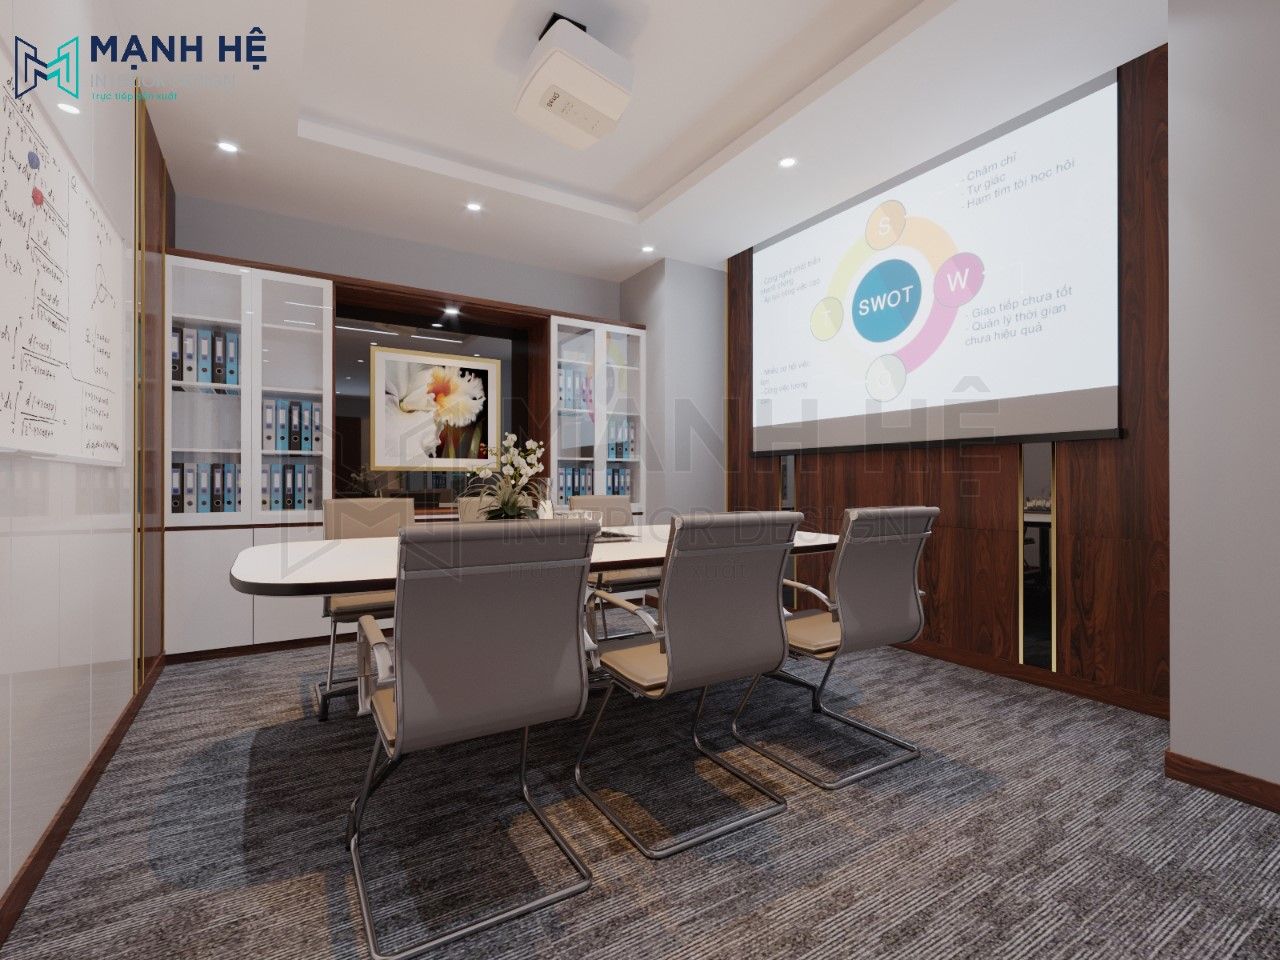 Với thiết kế nội thất đẹp lung linh, không gian văn phòng 70m2 của bạn sẽ trở nên đẳng cấp và sang trọng như một công ty đa quốc gia. Mỗi chi tiết được chọn lựa kỹ càng để tôn lên sự chuyên nghiệp của công ty và sự thoải mái của nhân viên.